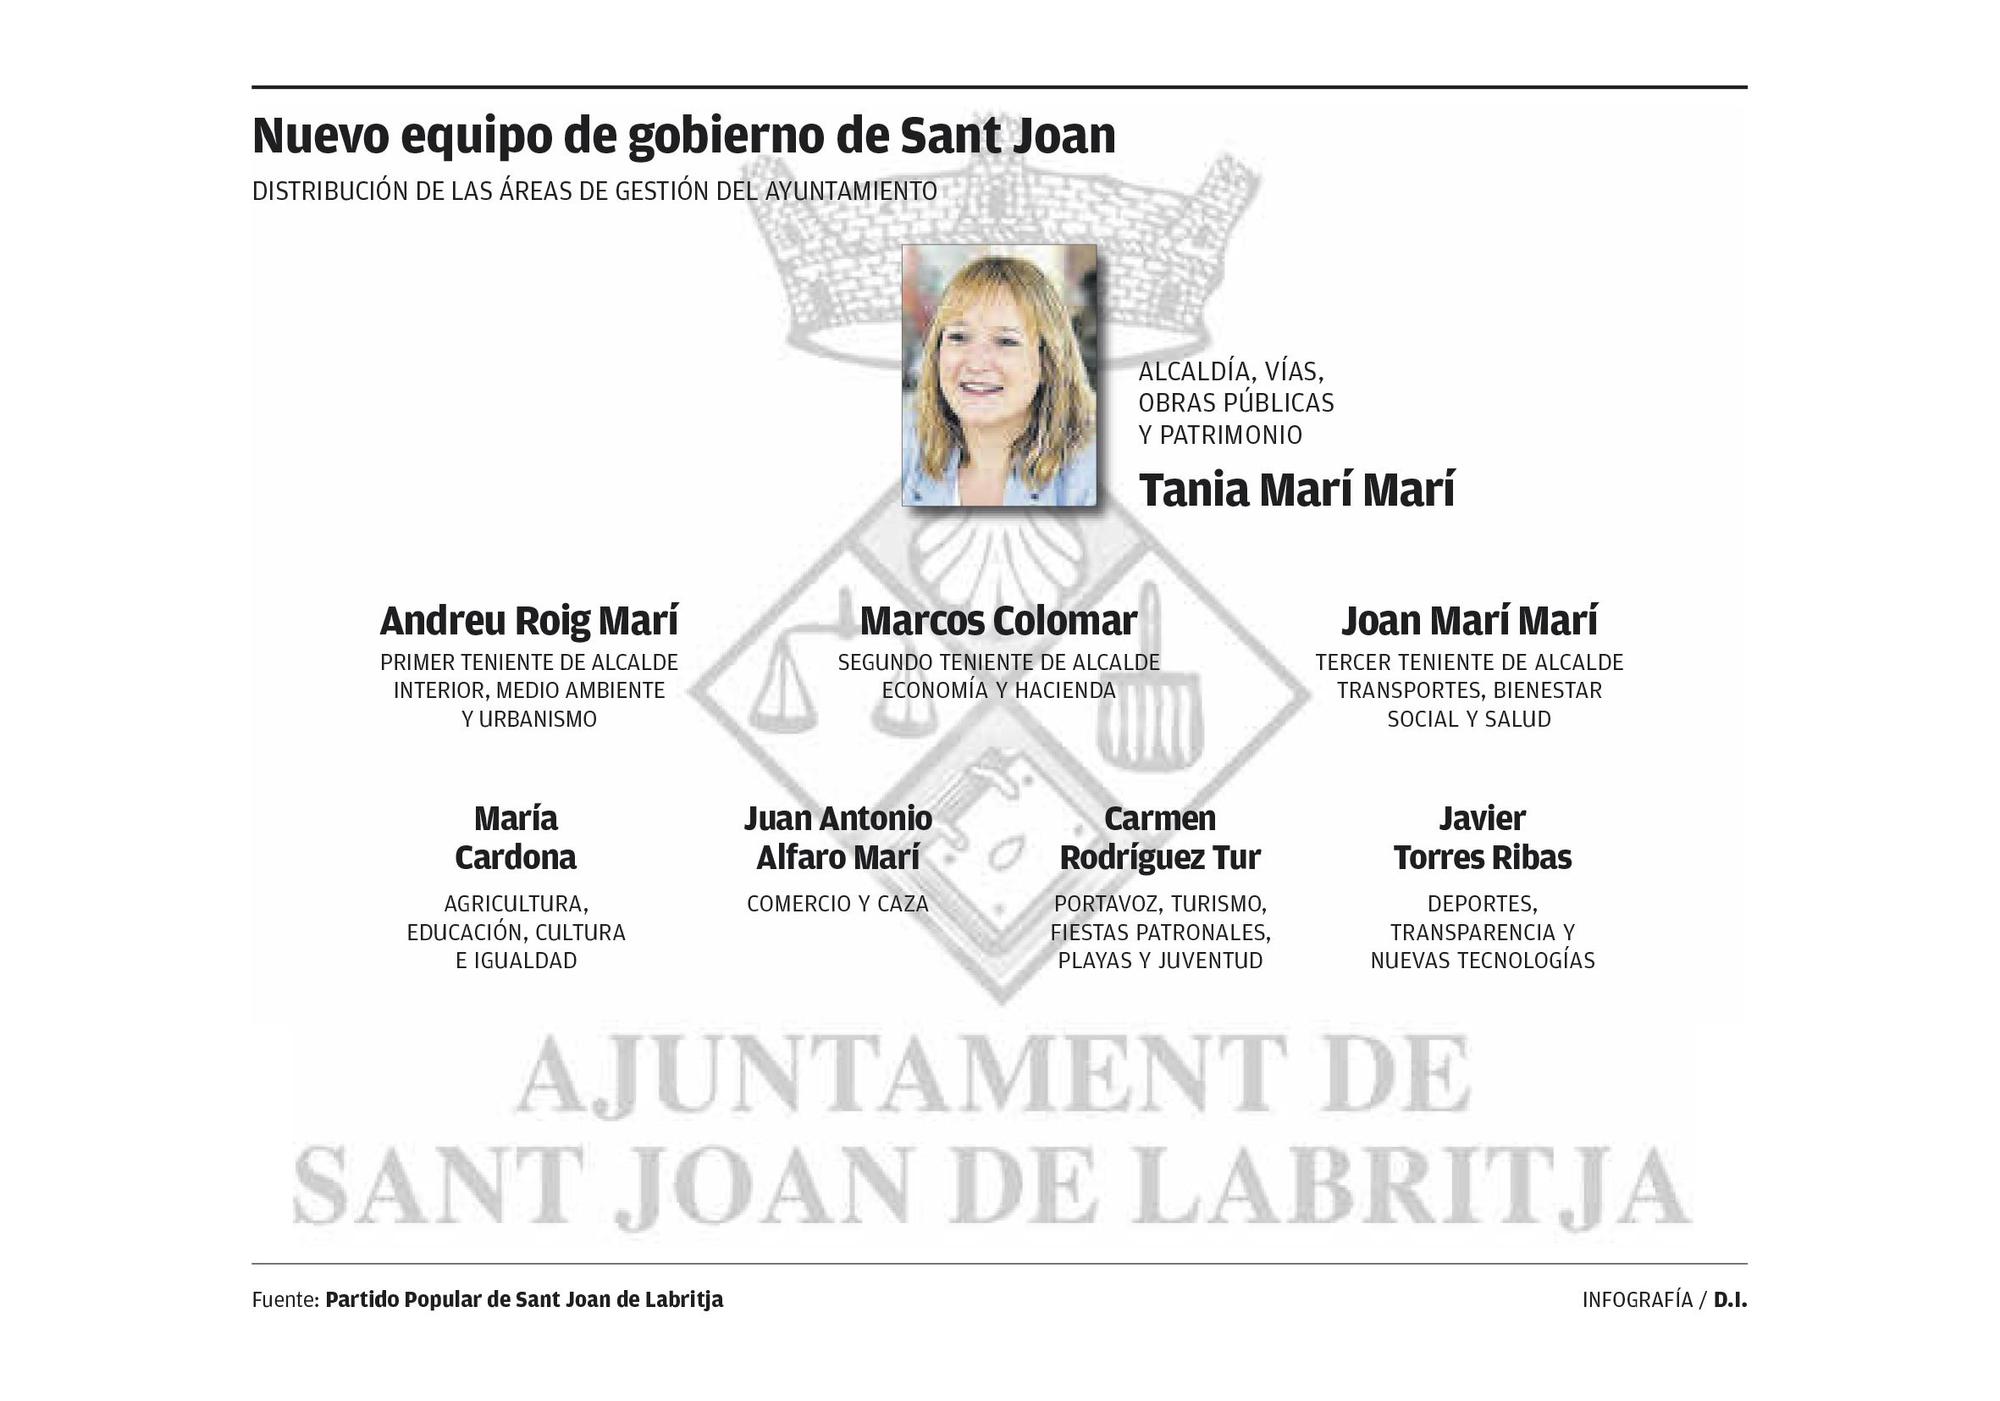 Nuevo equipo de gobierno de Sant Joan